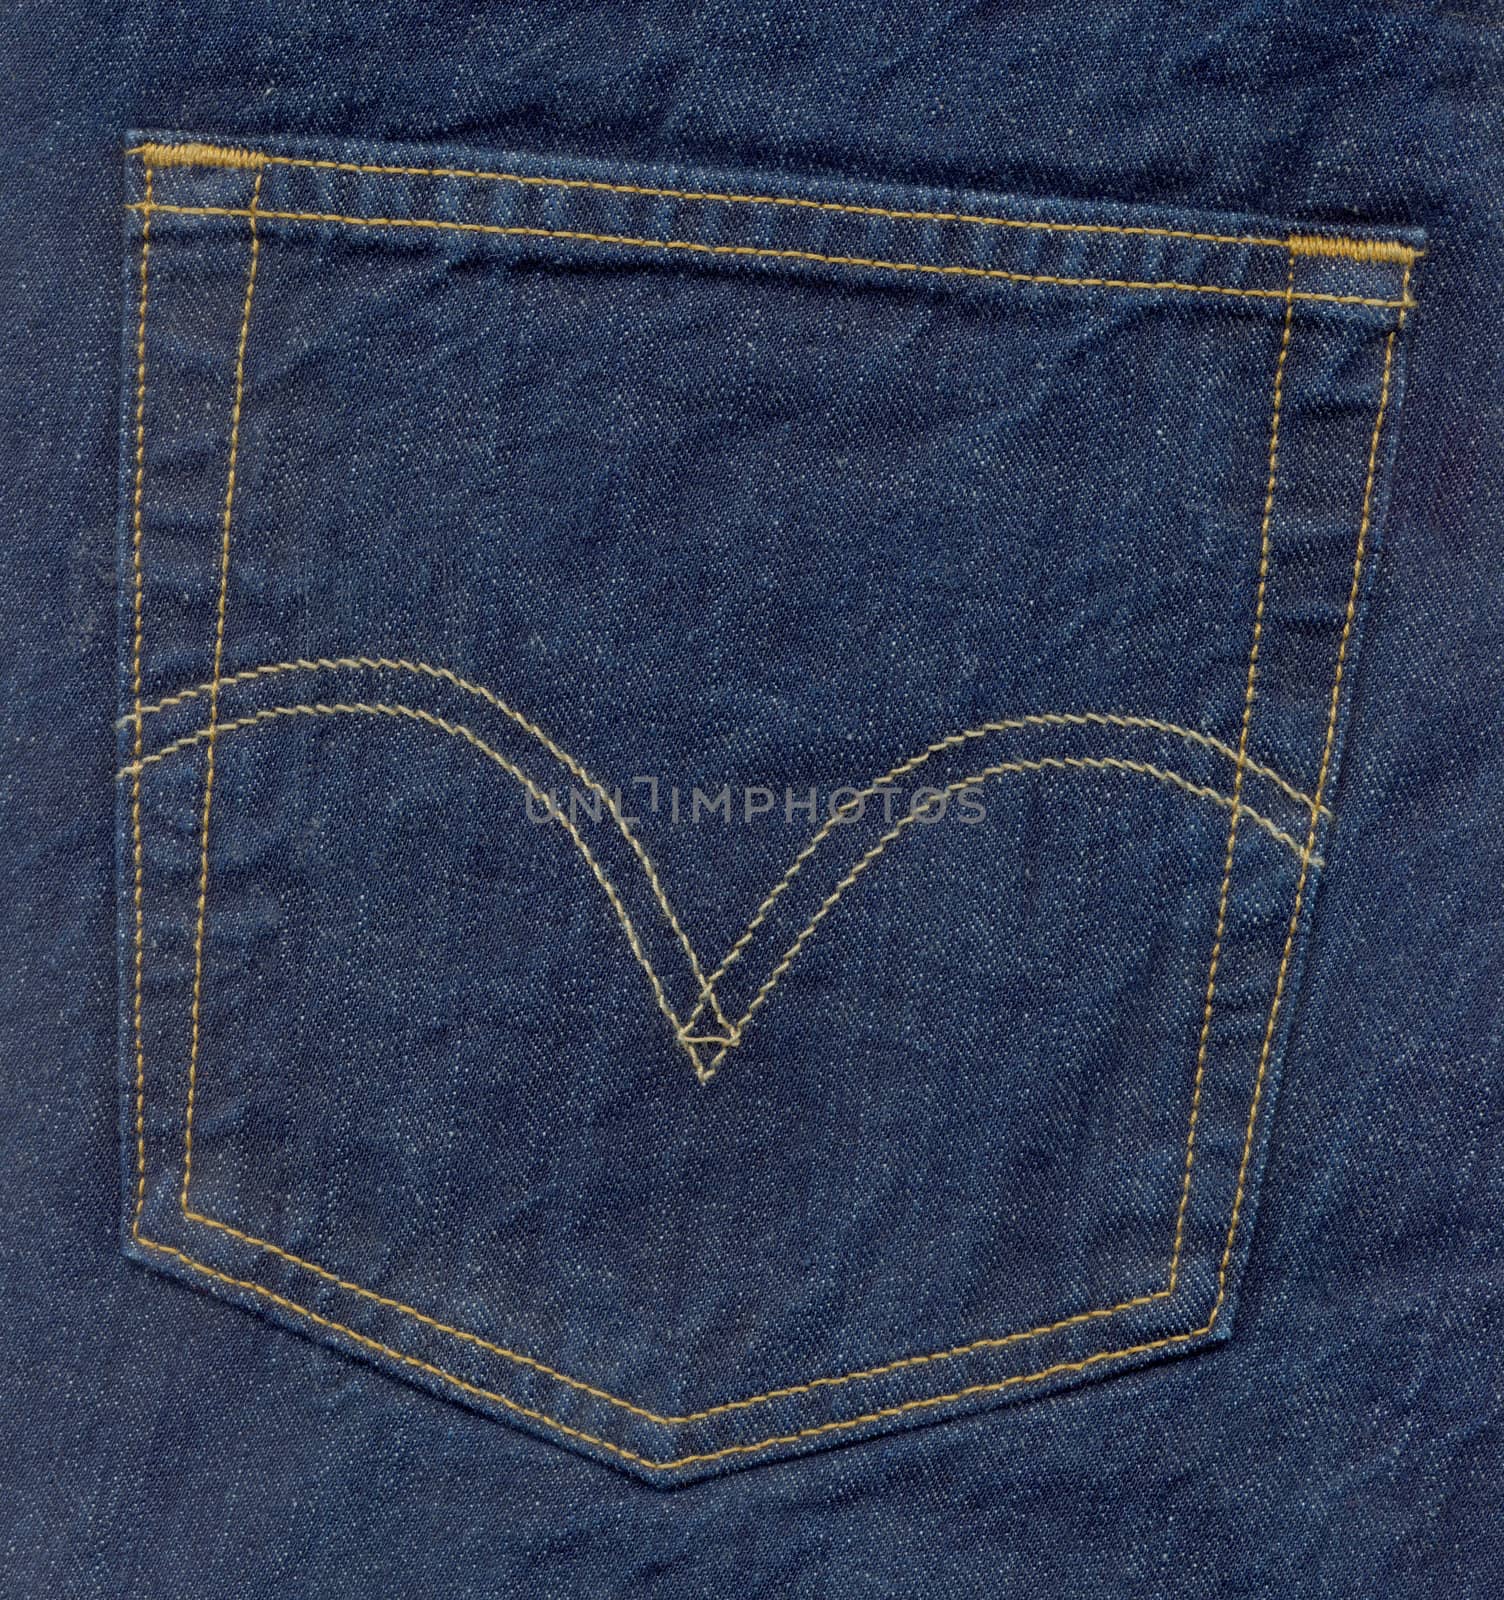 Close up of denim blue jeans back pocket